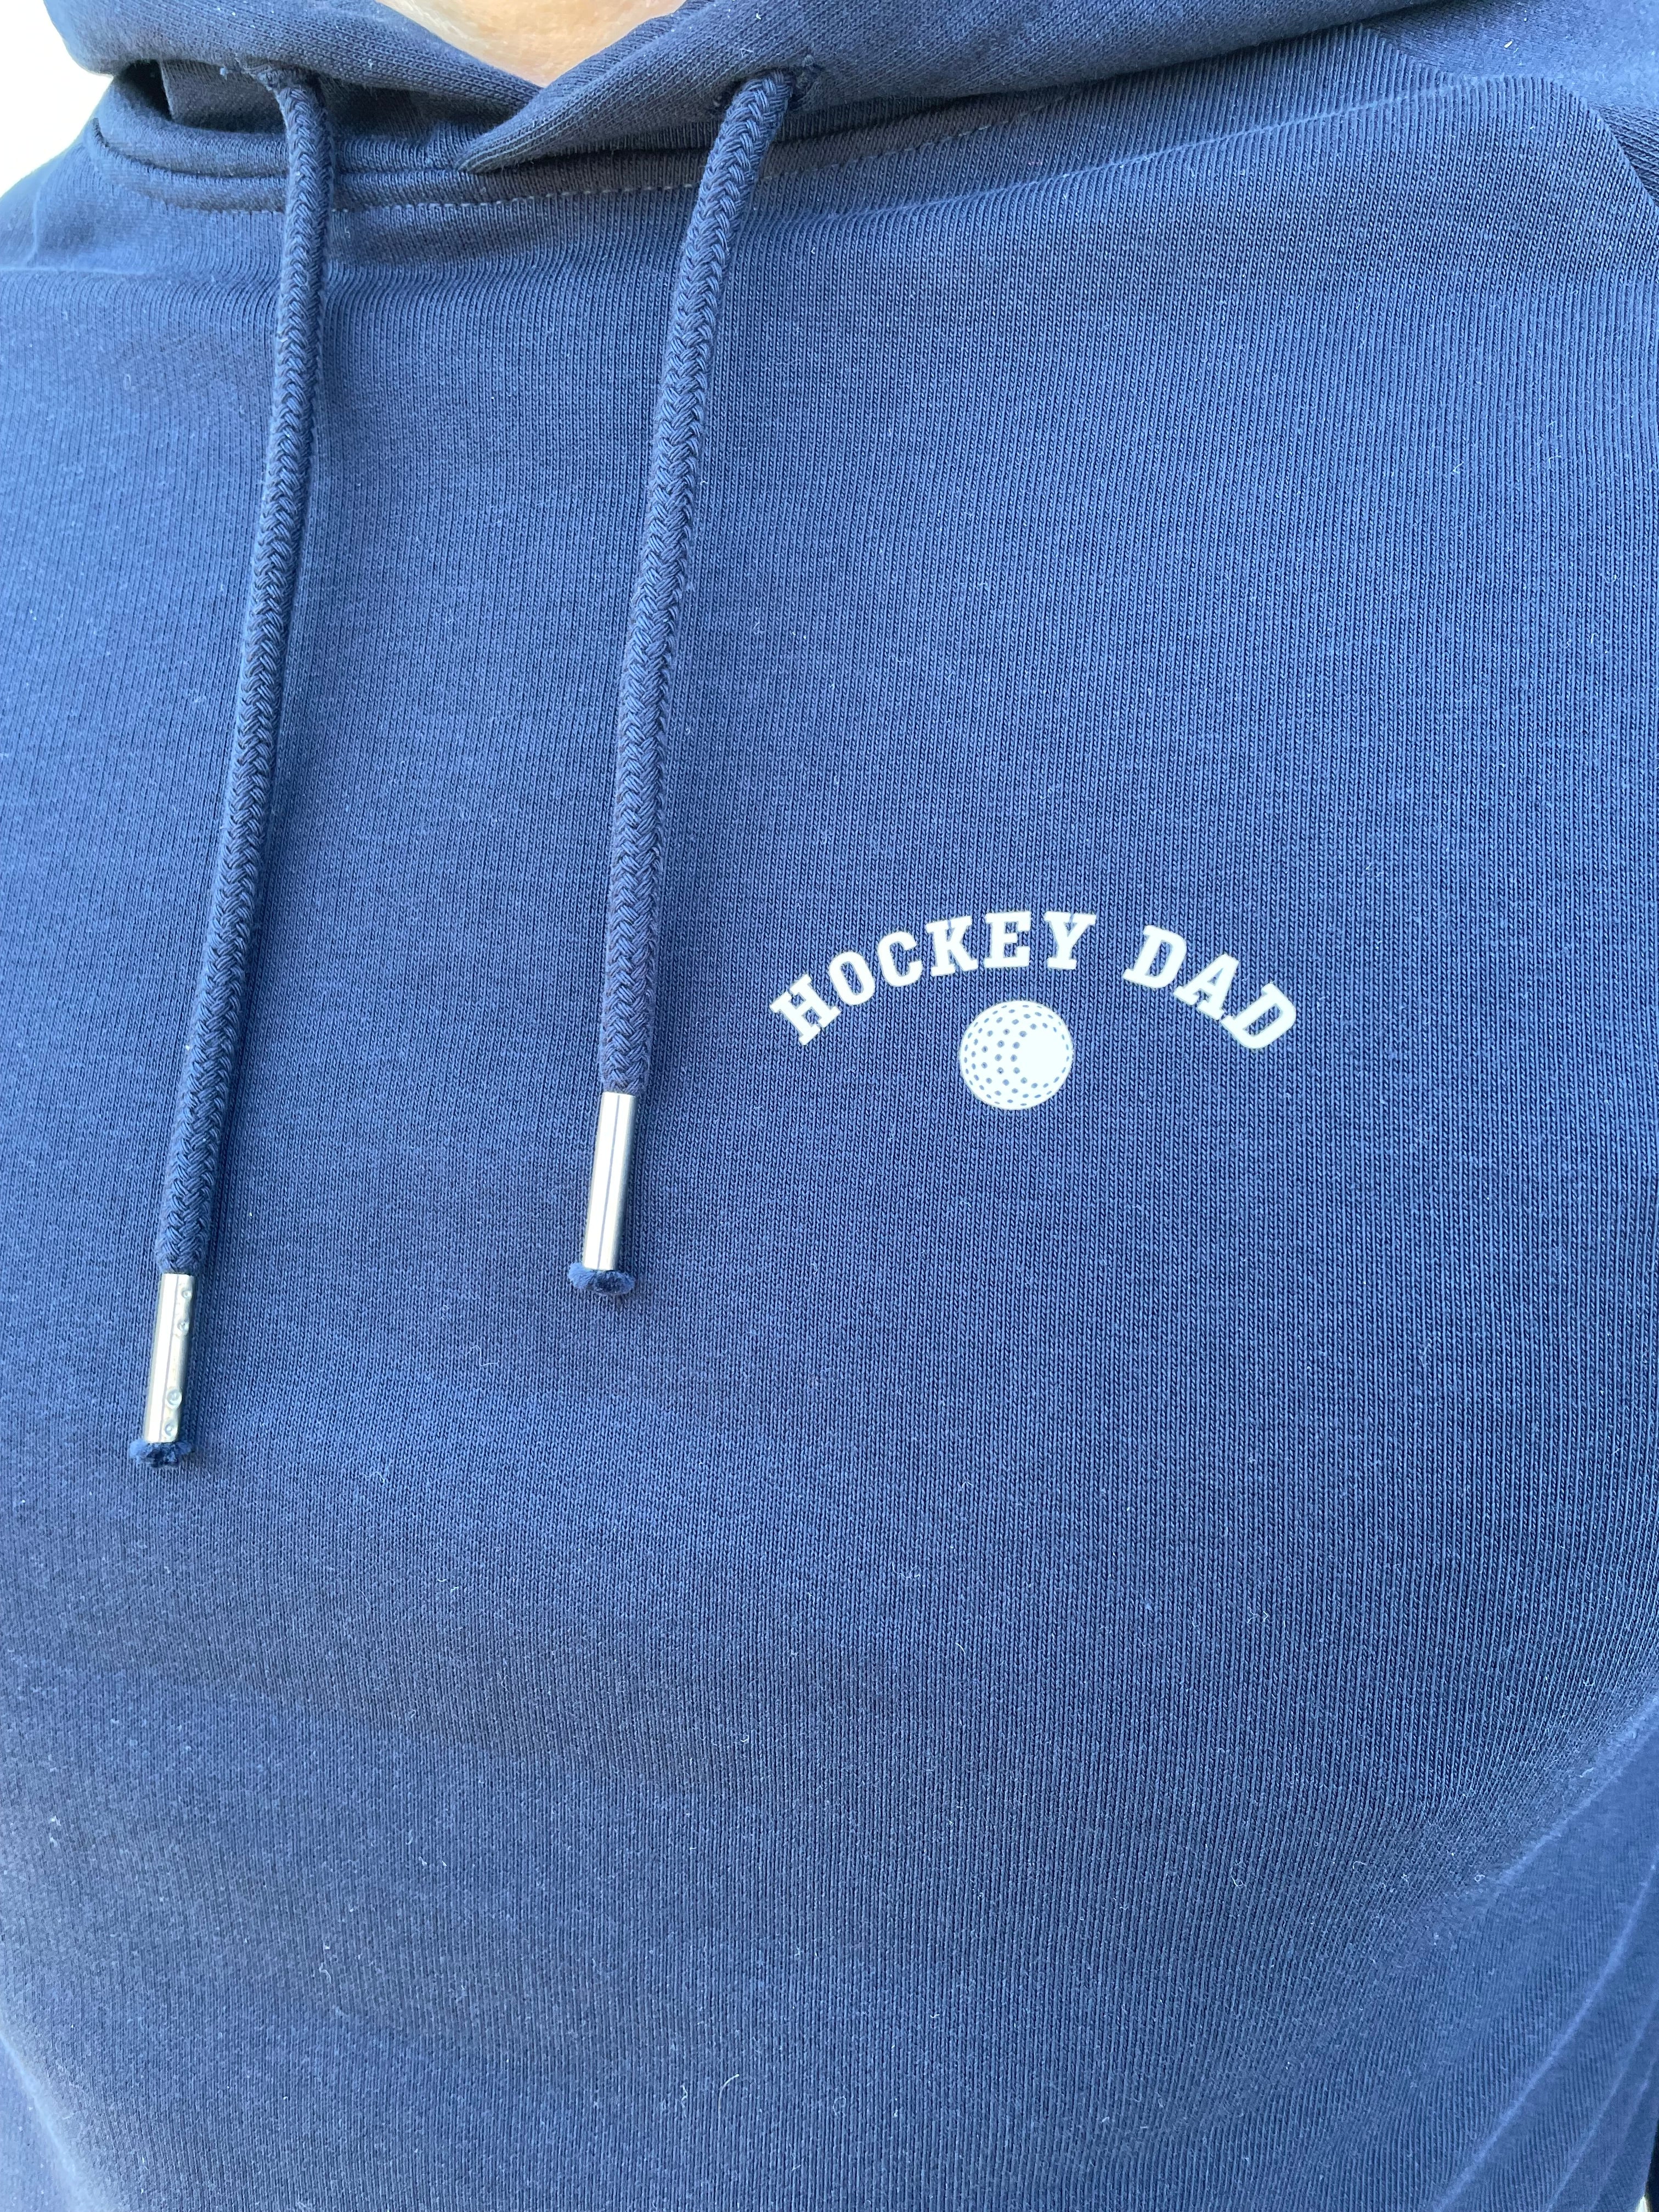 Hockey Dad Hoodie - Navy